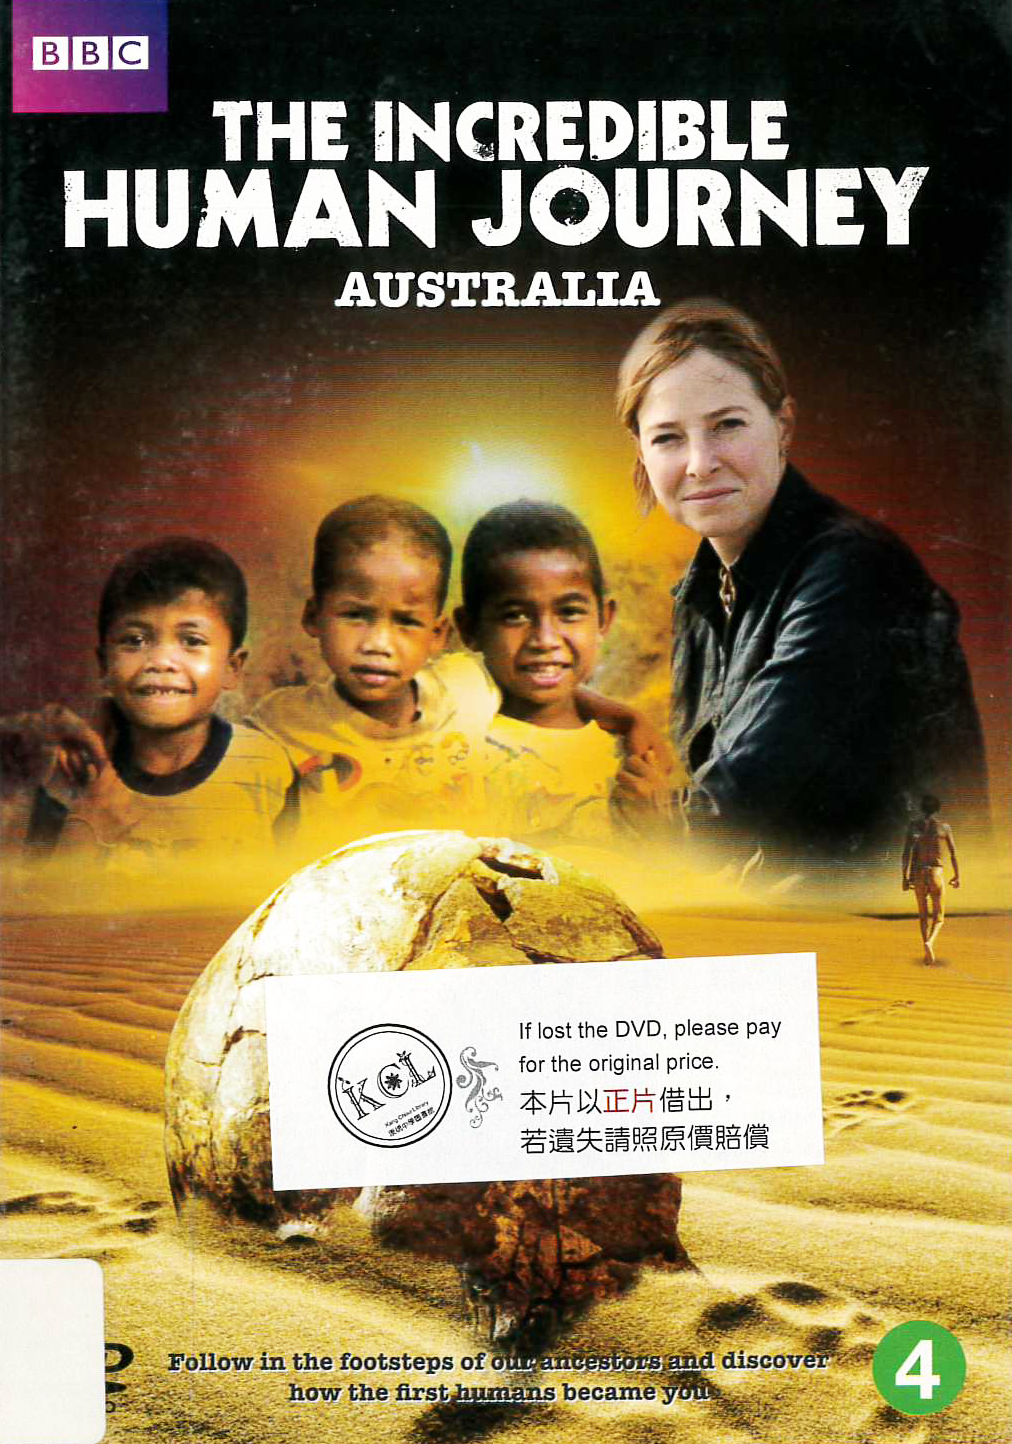 人類進化驚奇[4] : The indredible human journey [4] : Australia : 澳洲